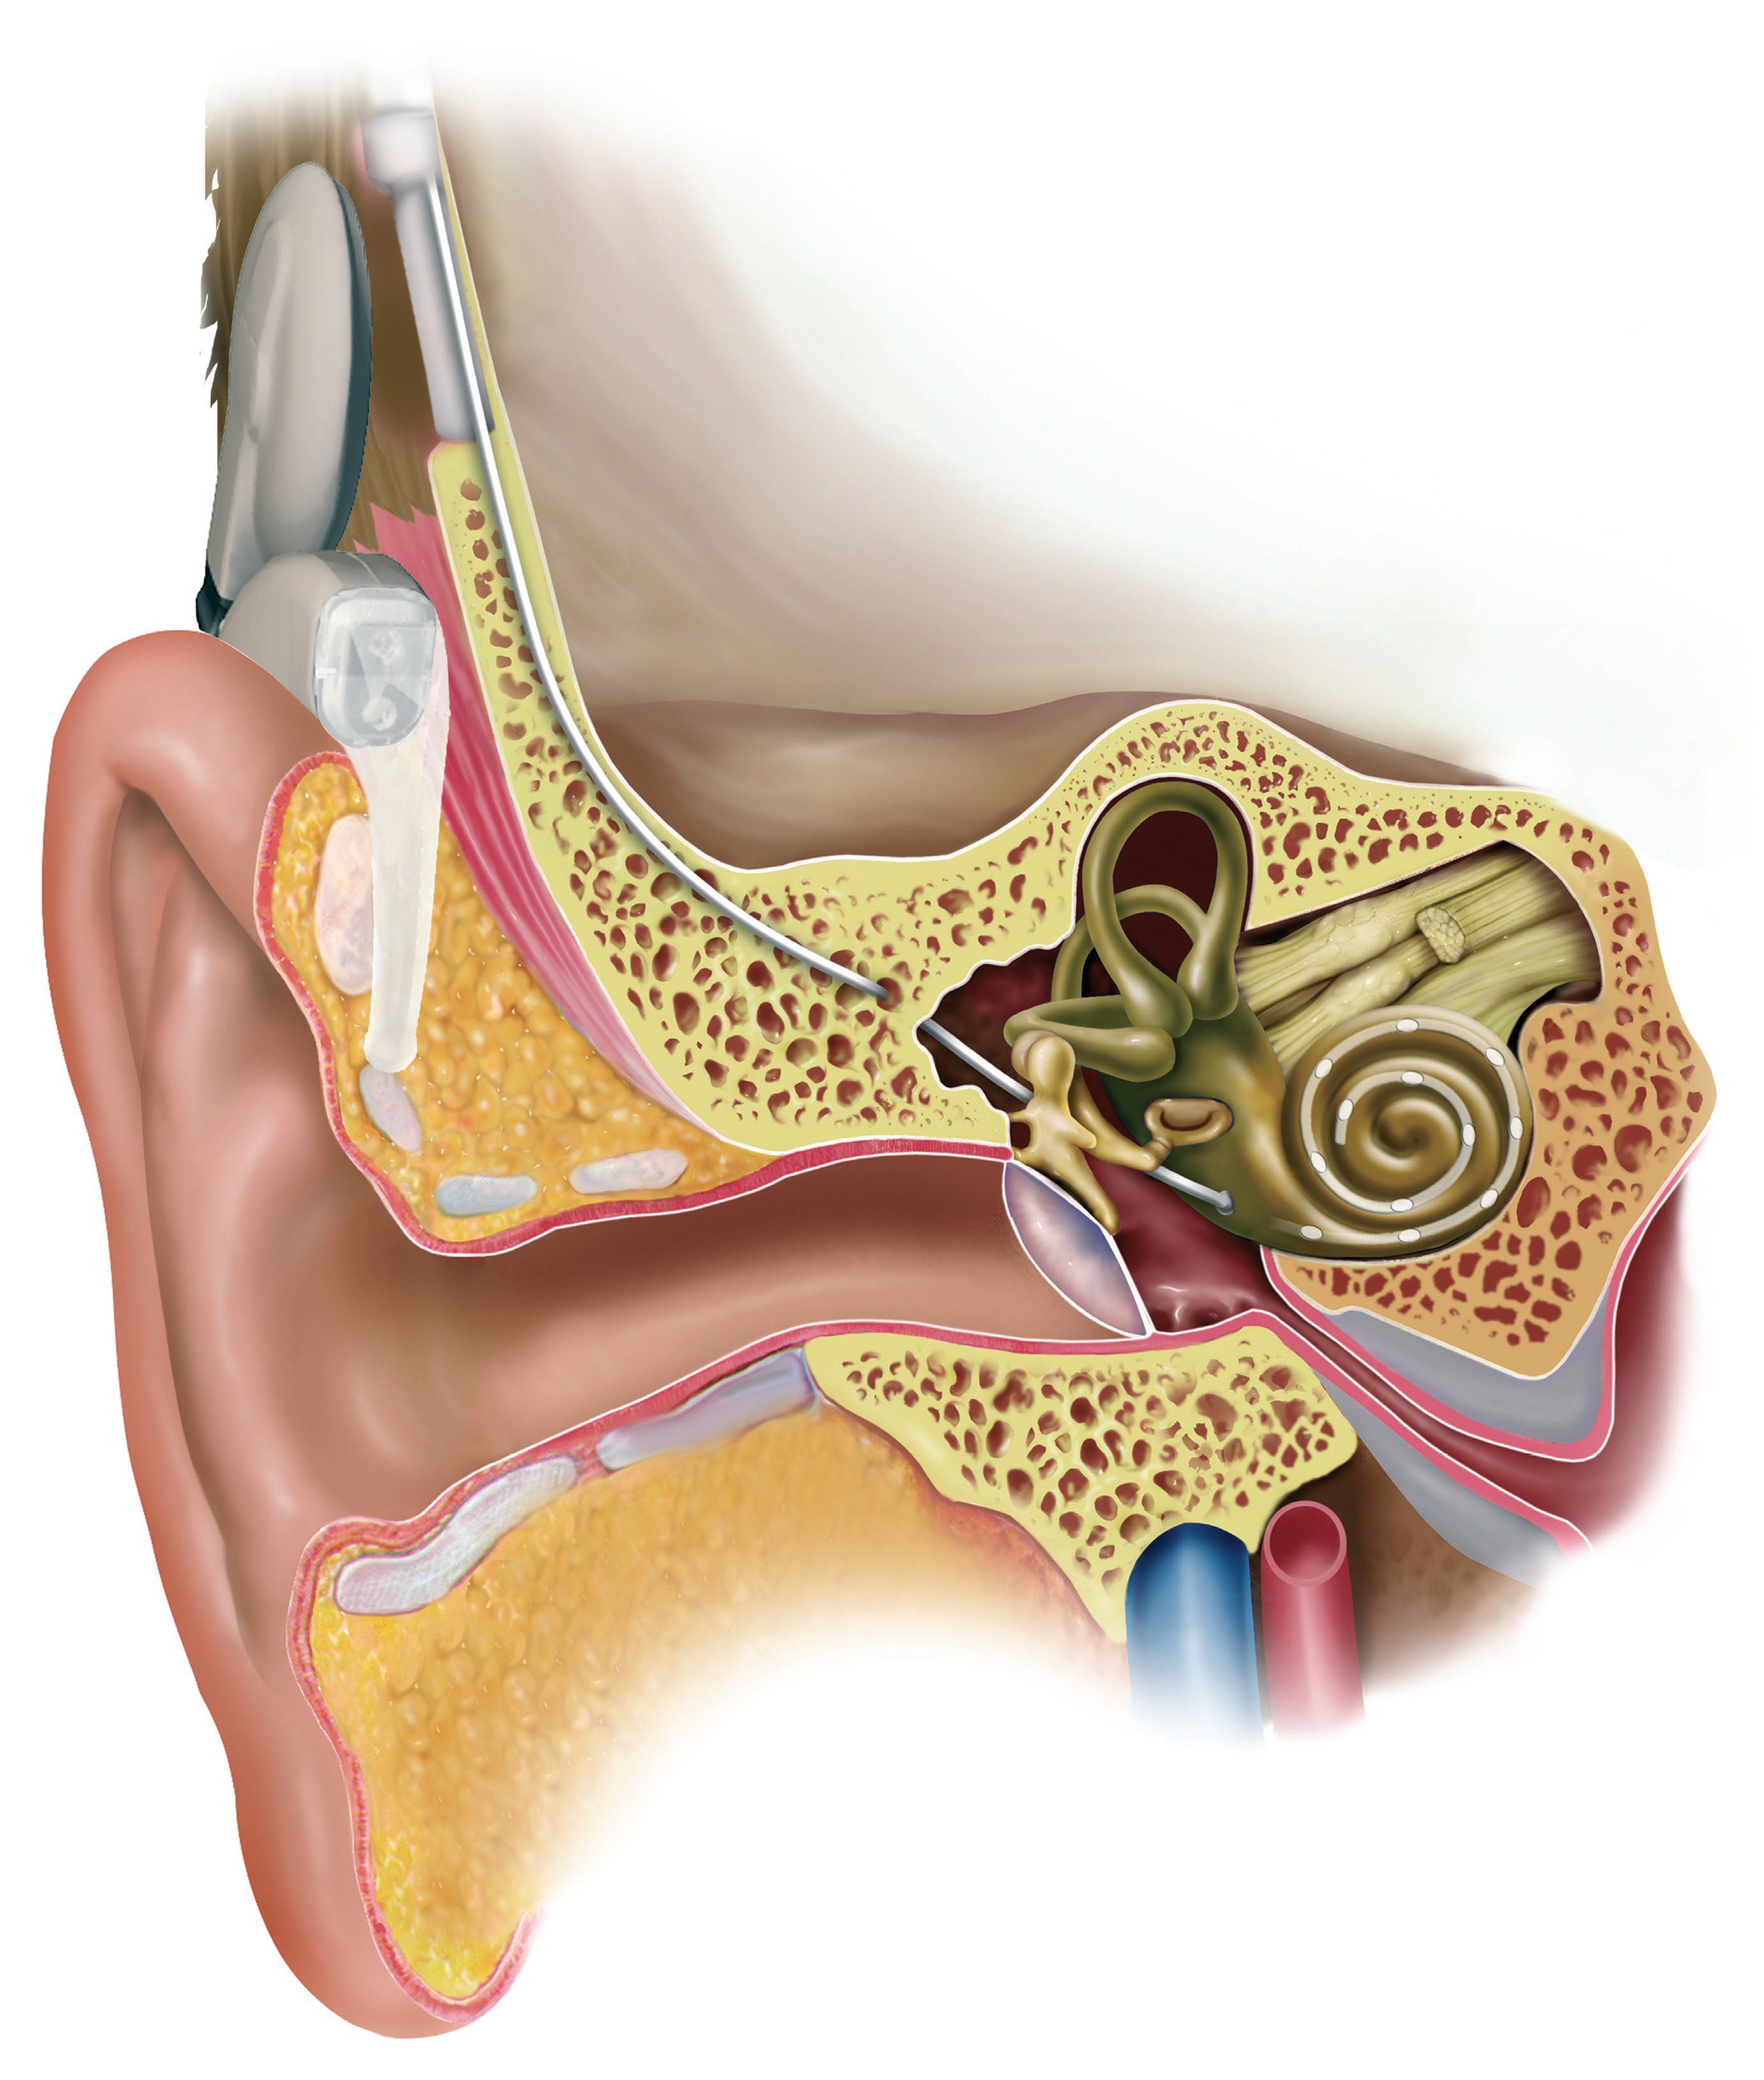 電子耳蝸植入圖